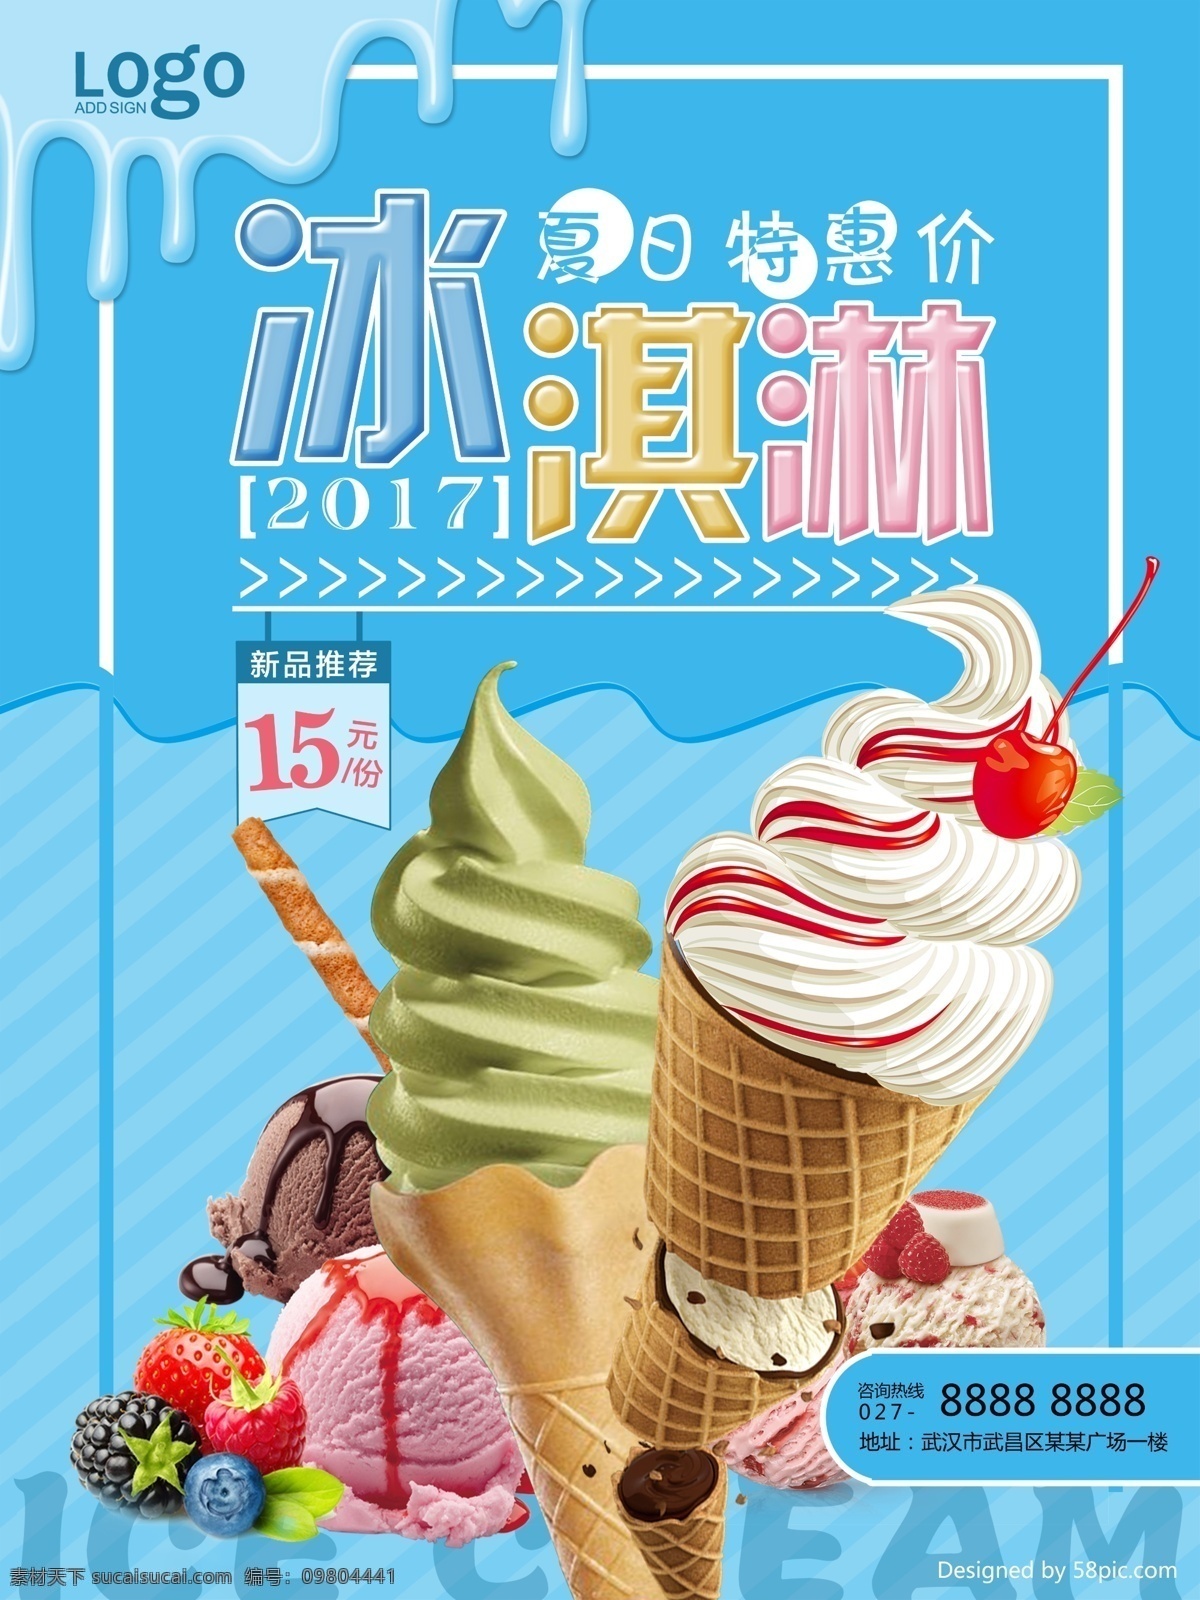 彩色 甜美 冰淇淋 促销 海报 美味冰淇淋 夏日特惠价 冰淇淋促销 促狭海报 清凉一夏